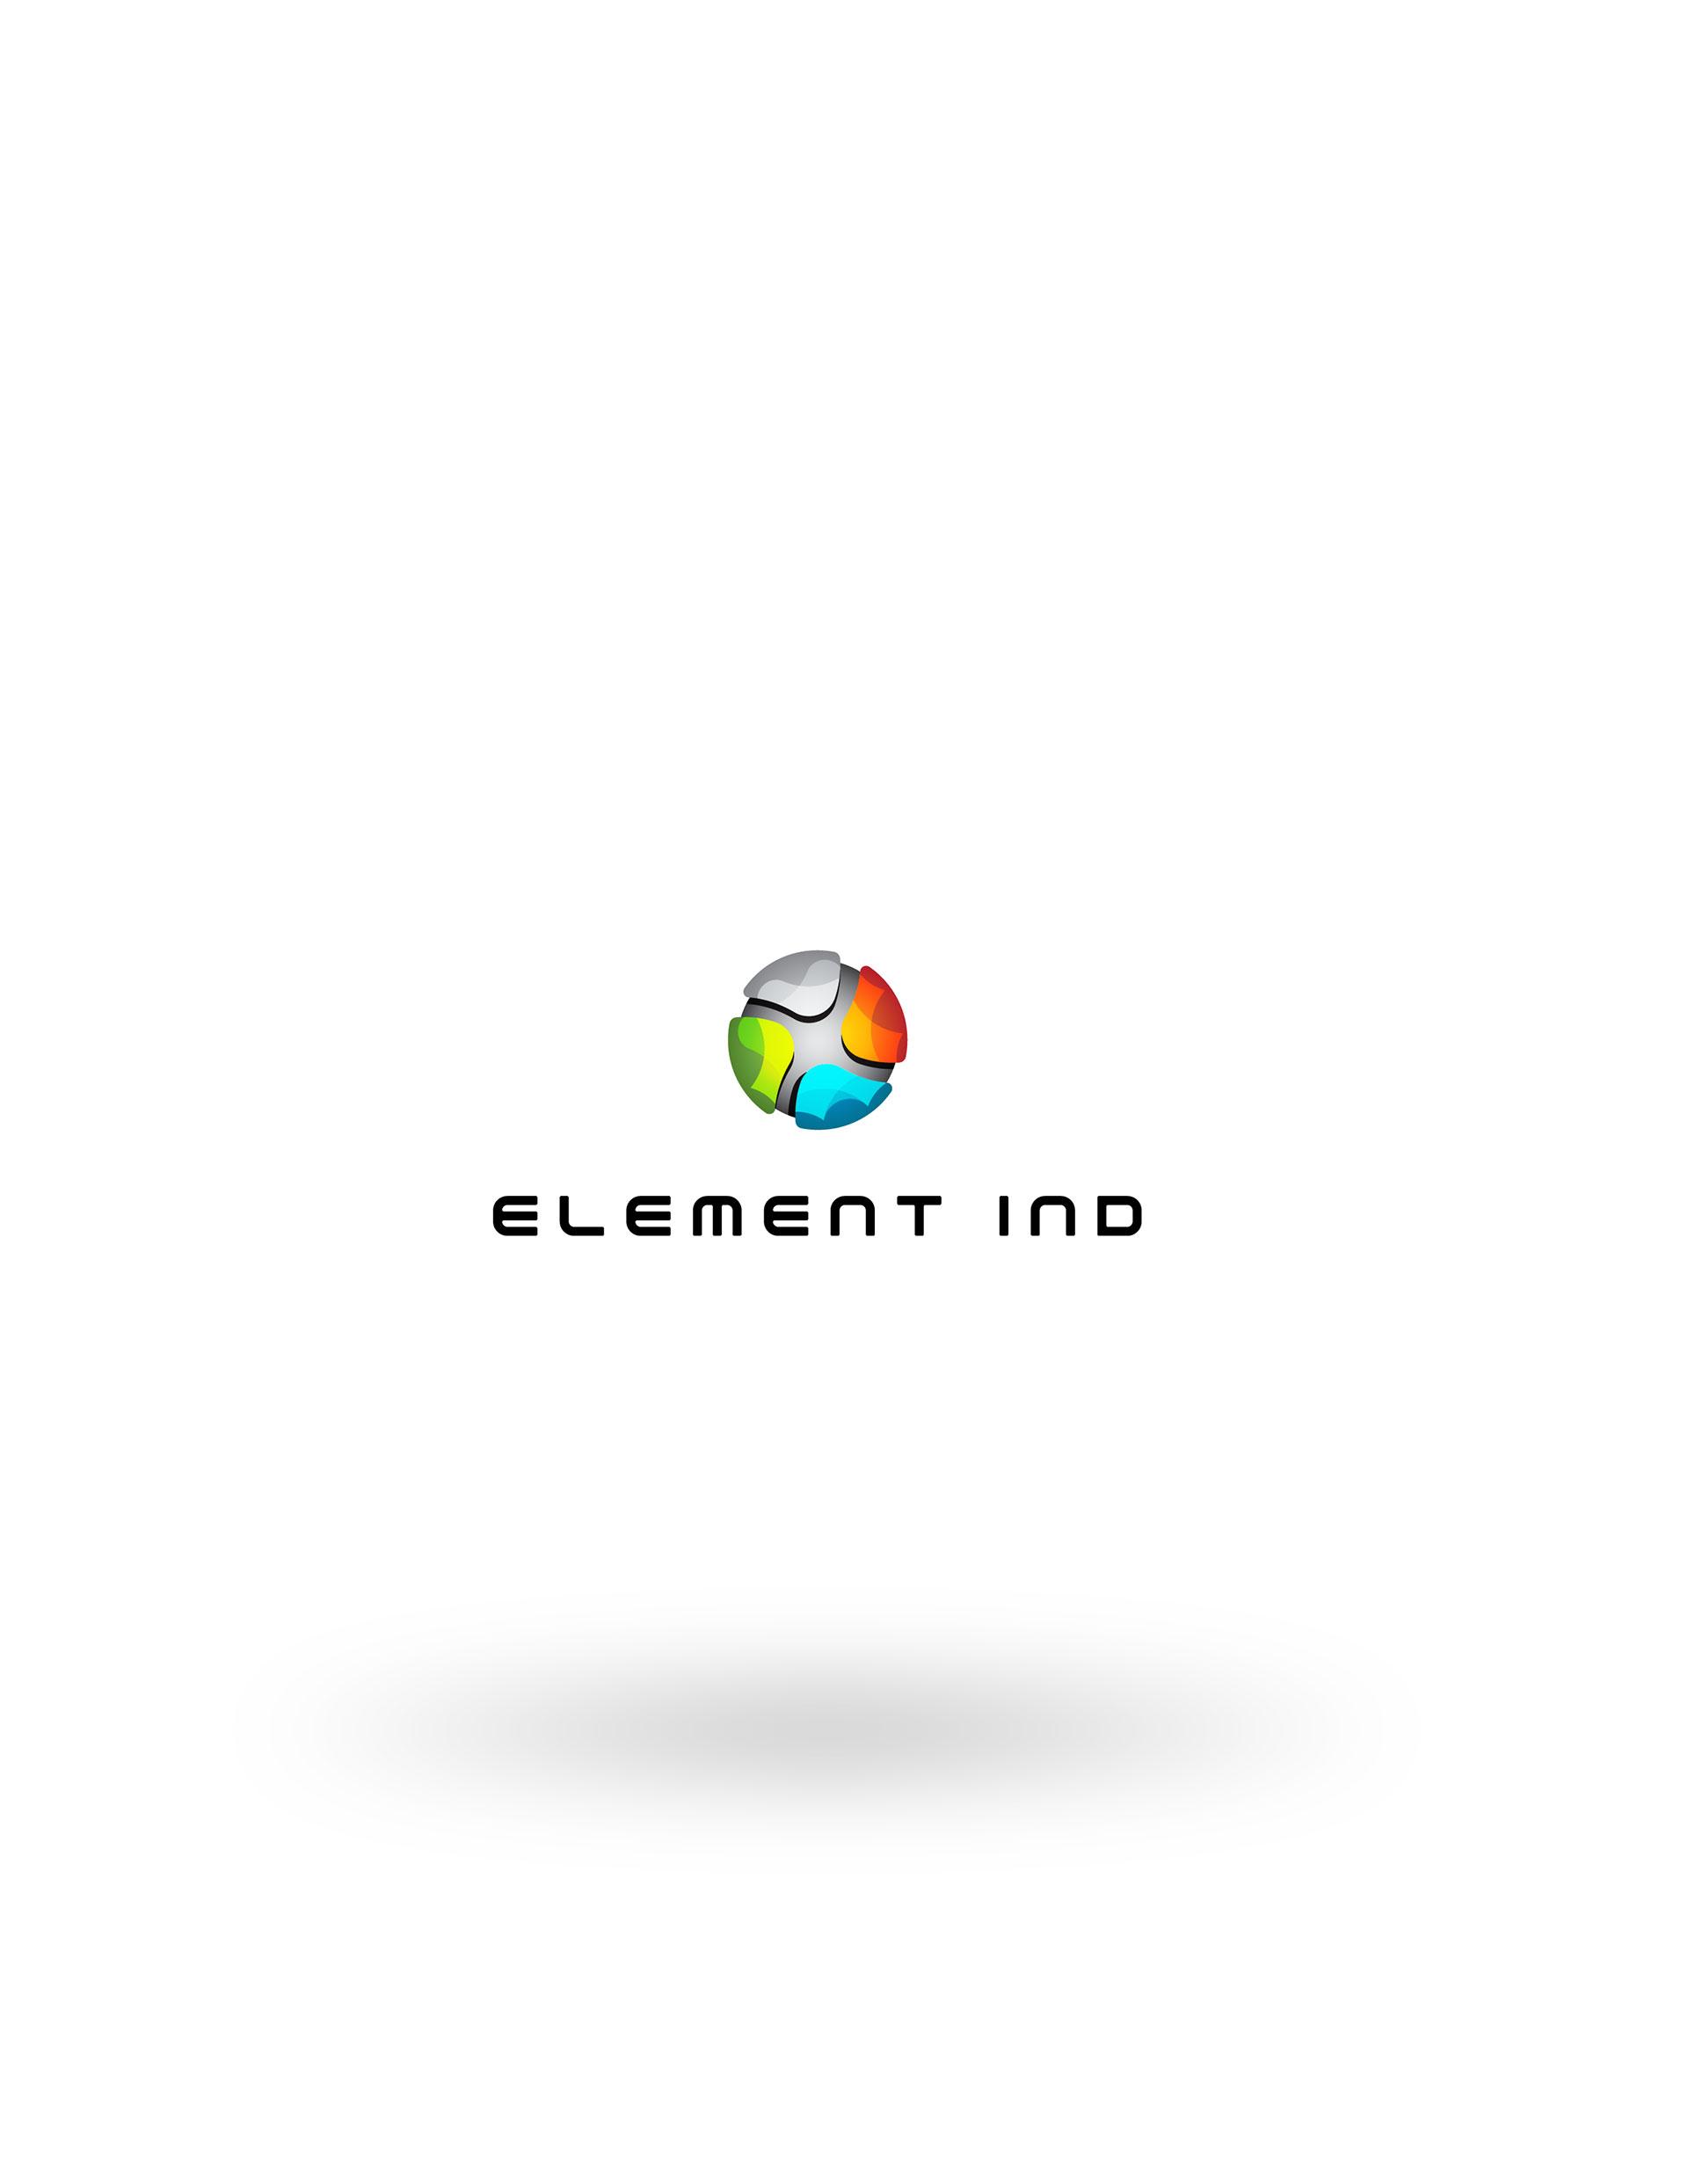 Ind Logo - Element IND Logo Design | Celi Creative